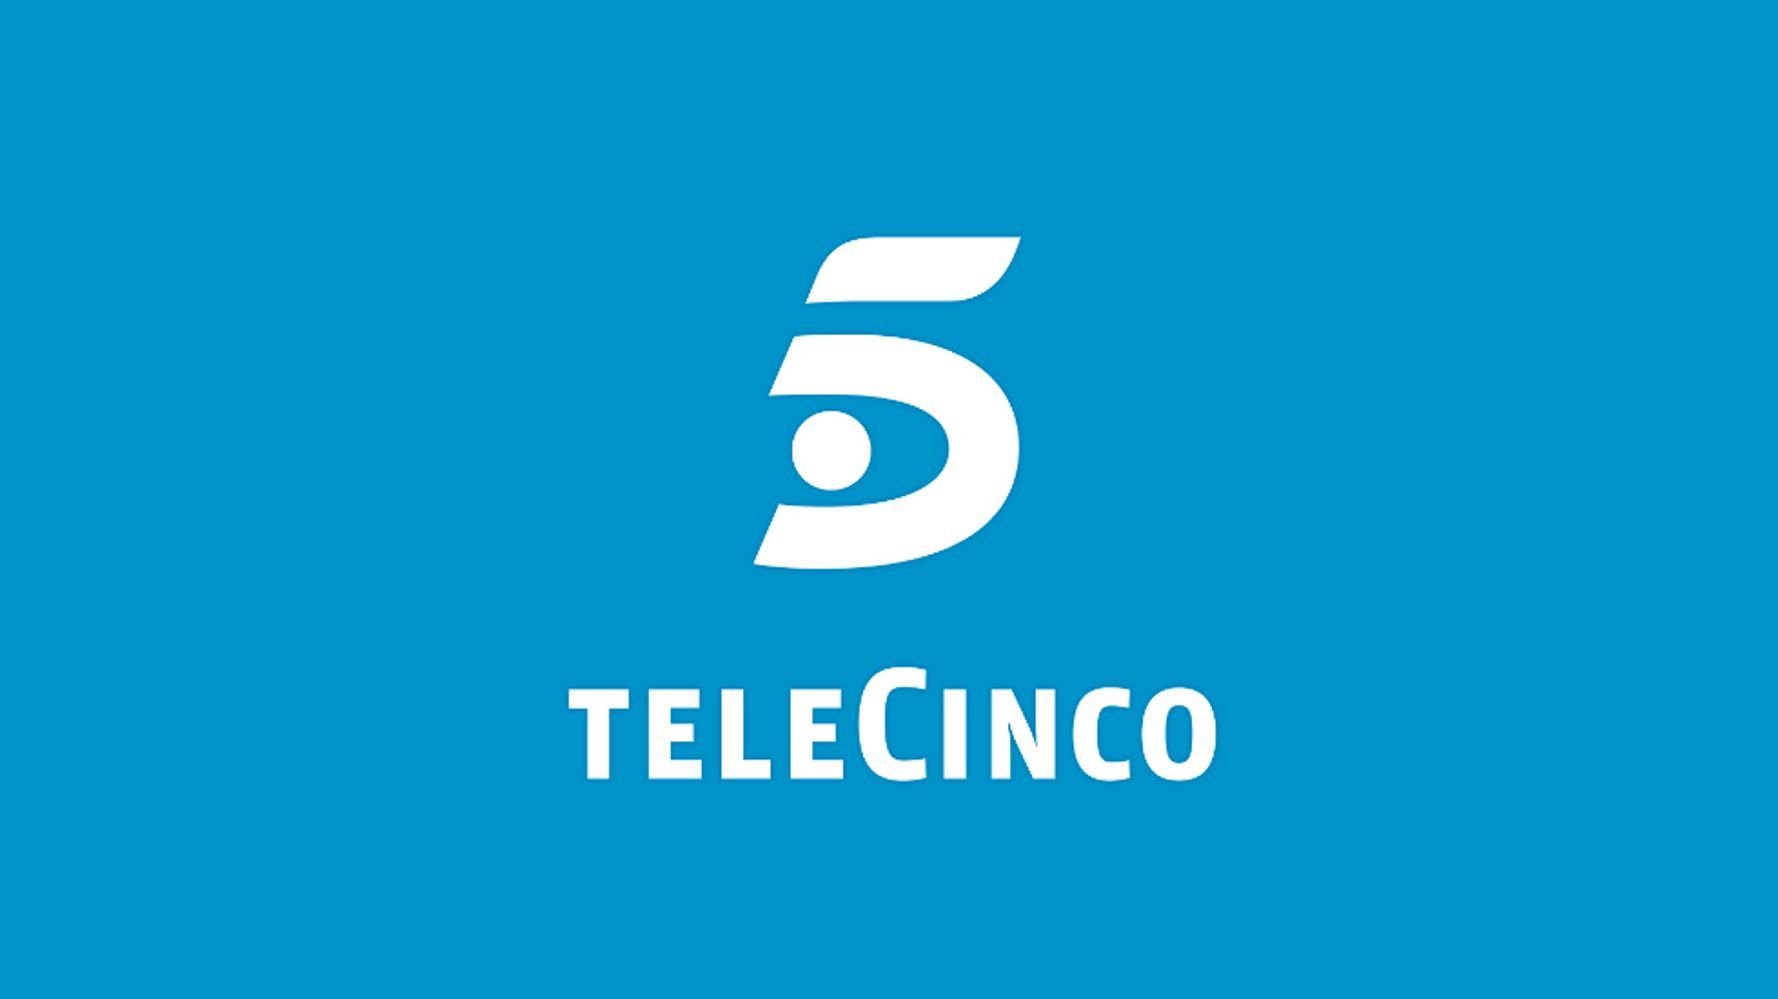 Telecinco anuncia serie sobre Tetris